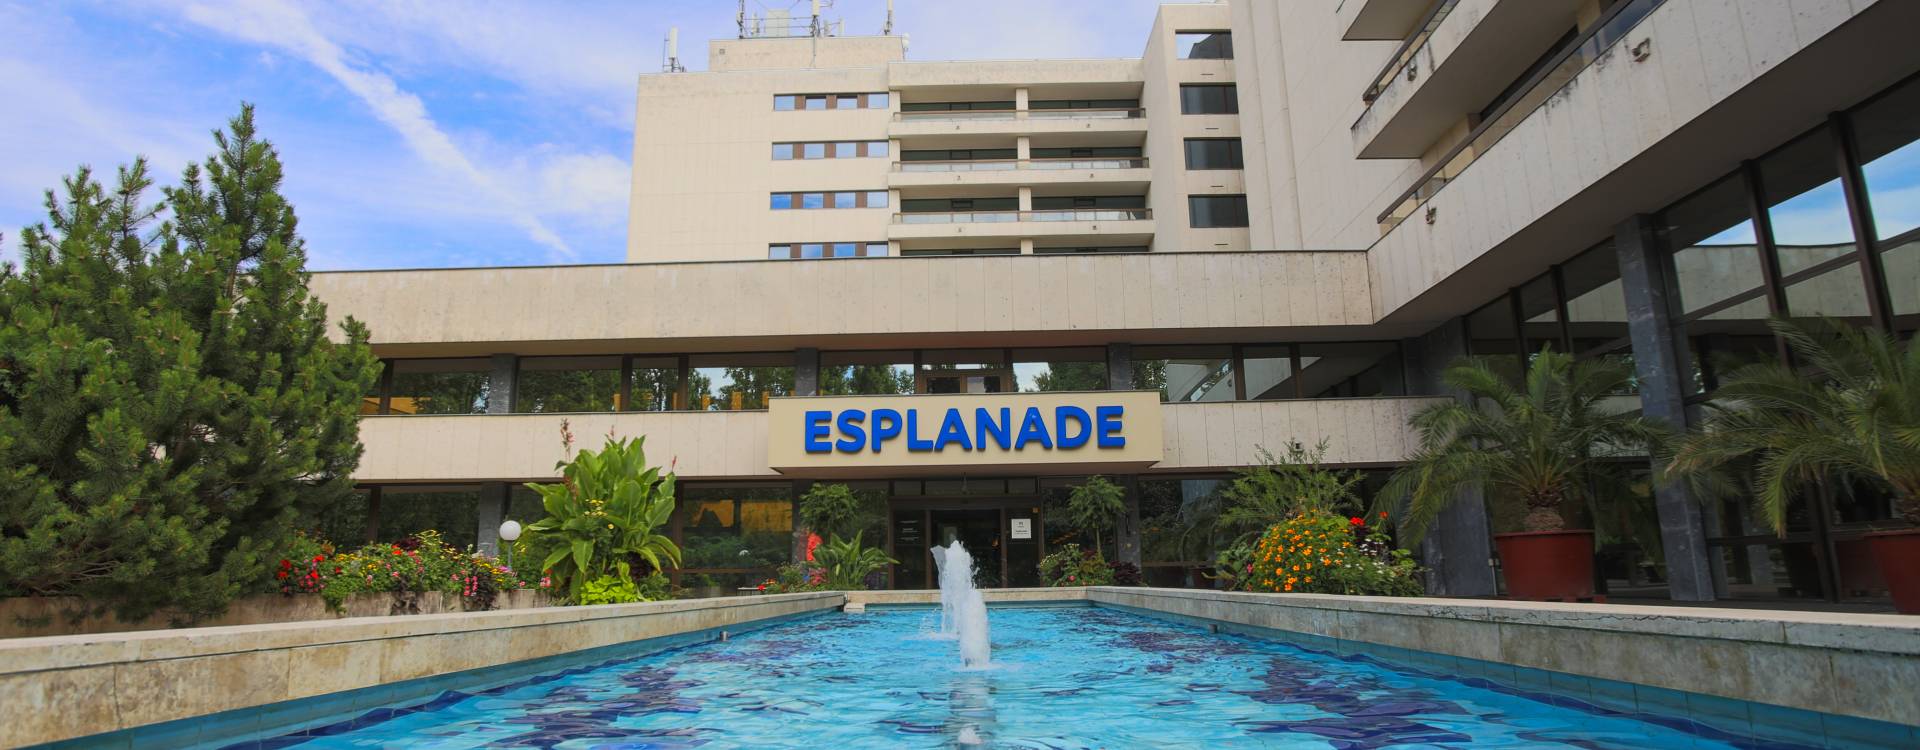 Hotel Esplanade - aktuální INFO (COVID-19)